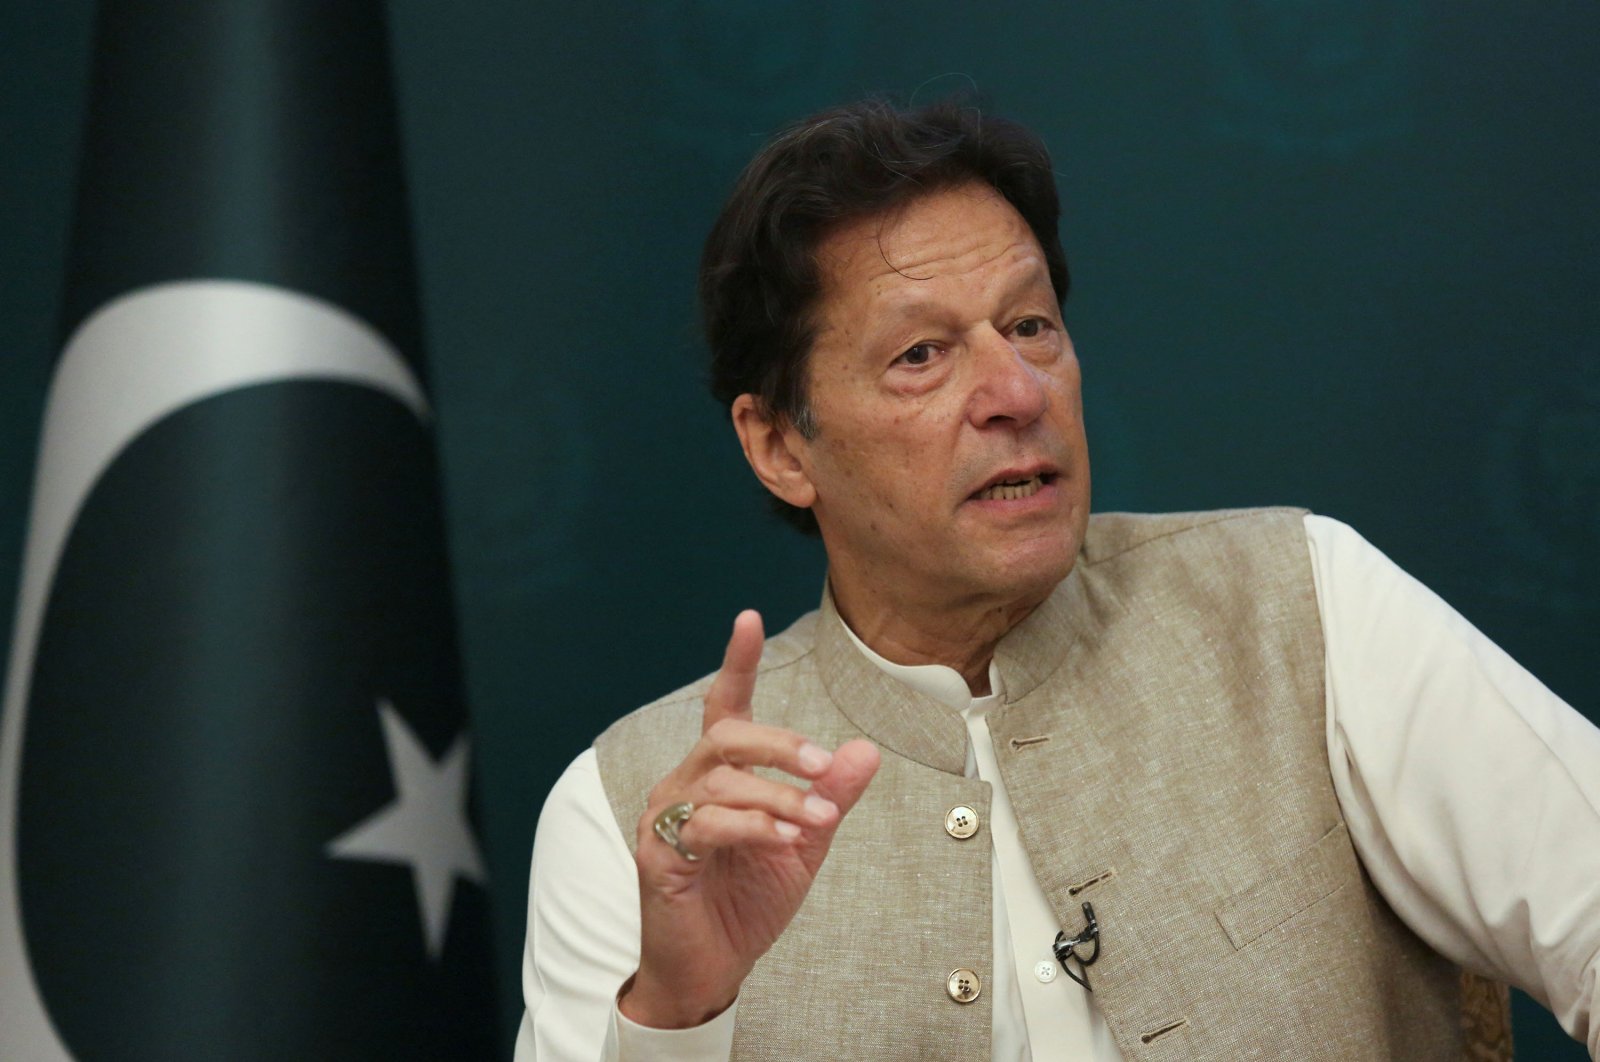 PM Pakistan Khan memilih keluar dari kantor setelah berminggu-minggu ketegangan